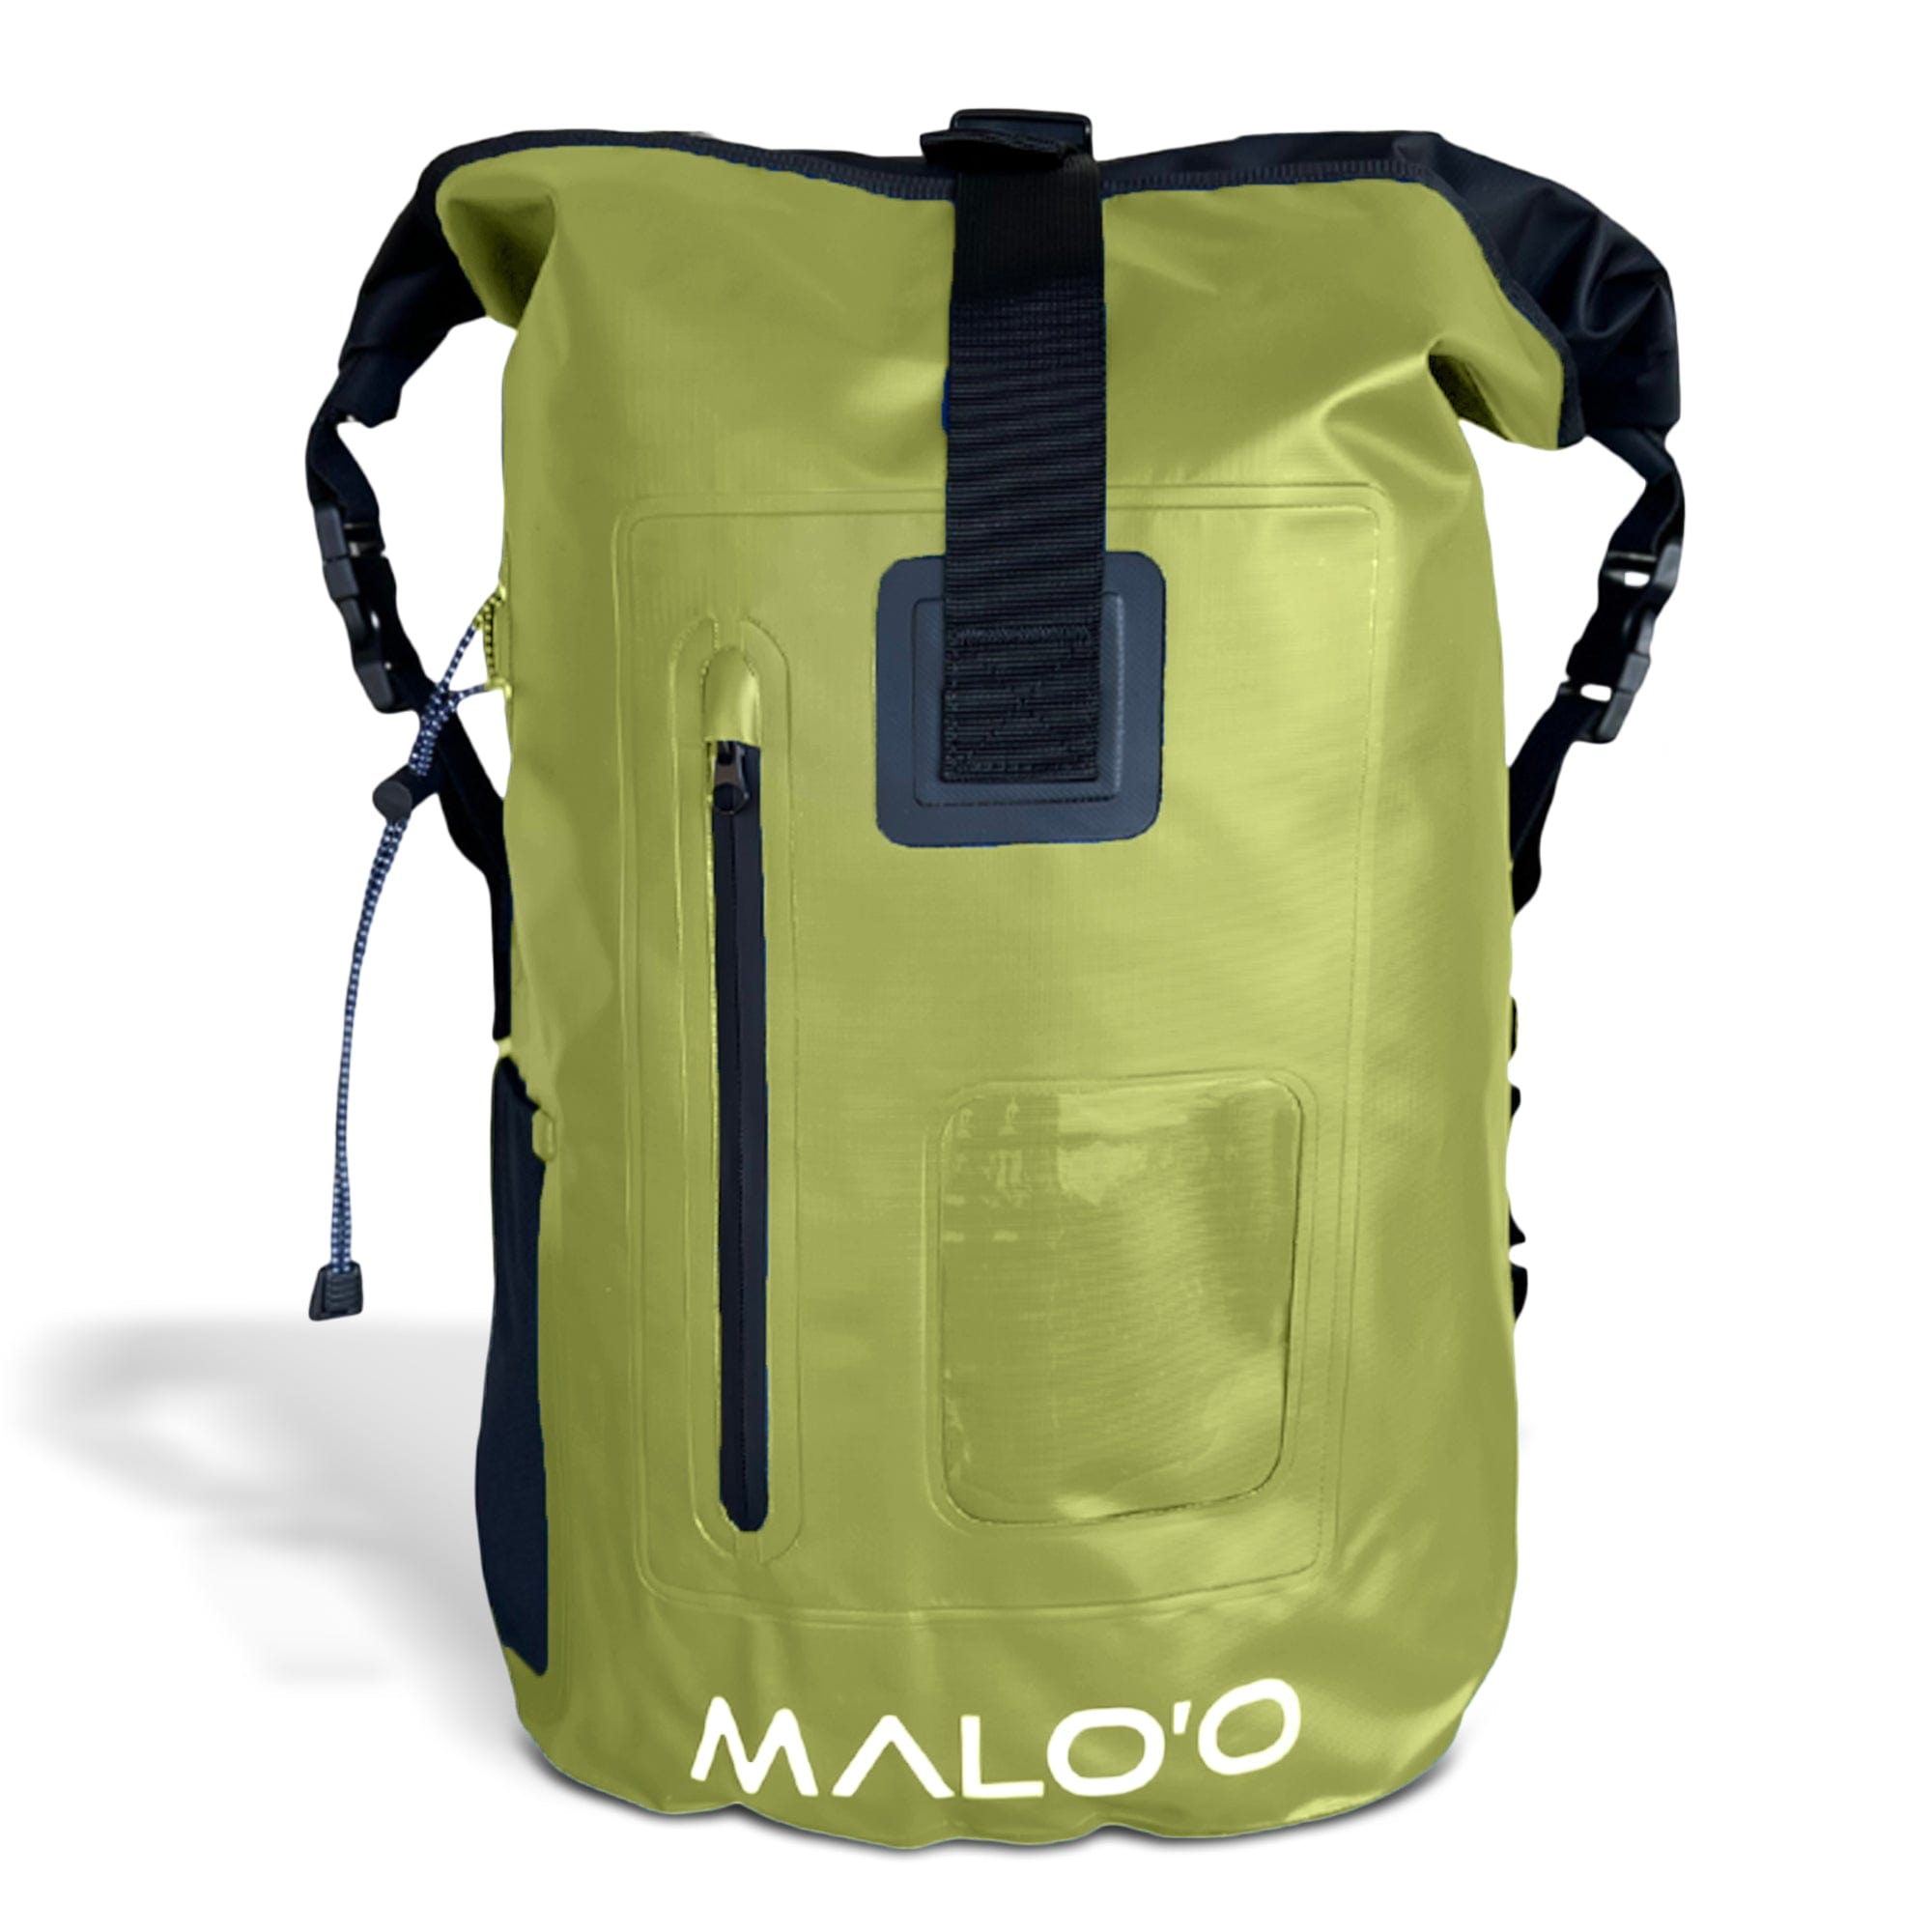 DryPack 40 Liter Waterproof Backpack